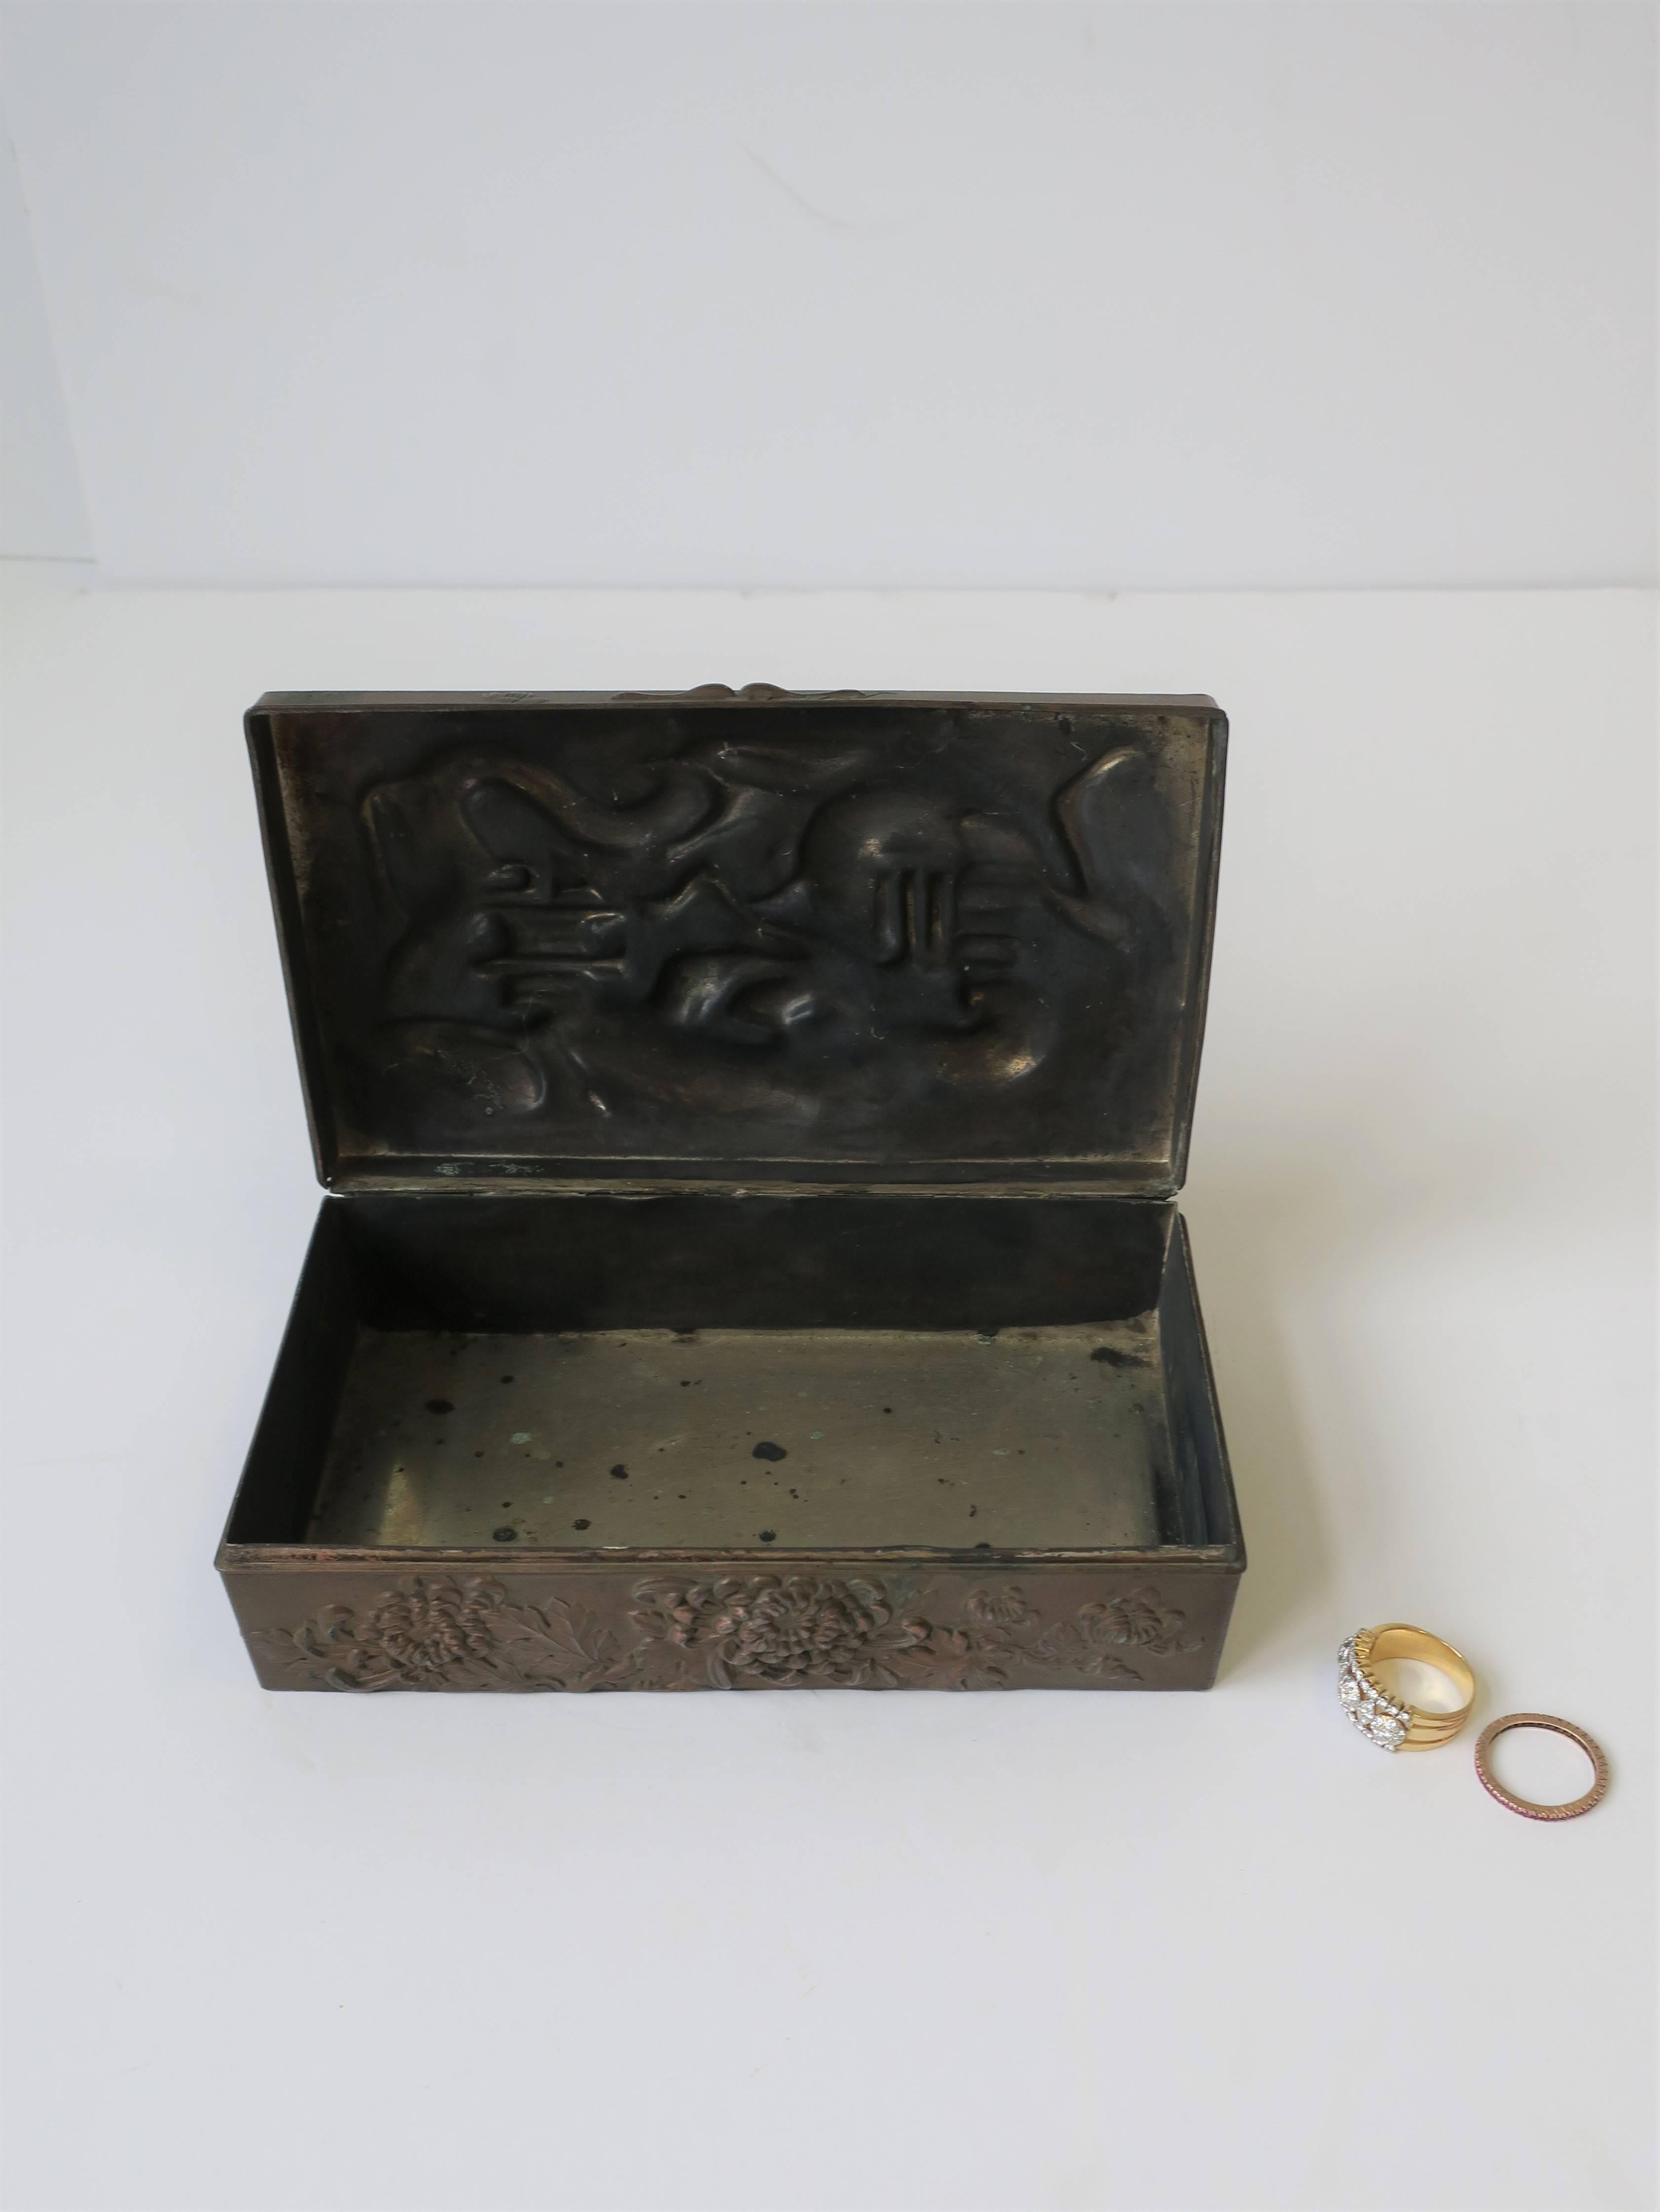 20th Century Copper Metal Box with Dragon Design